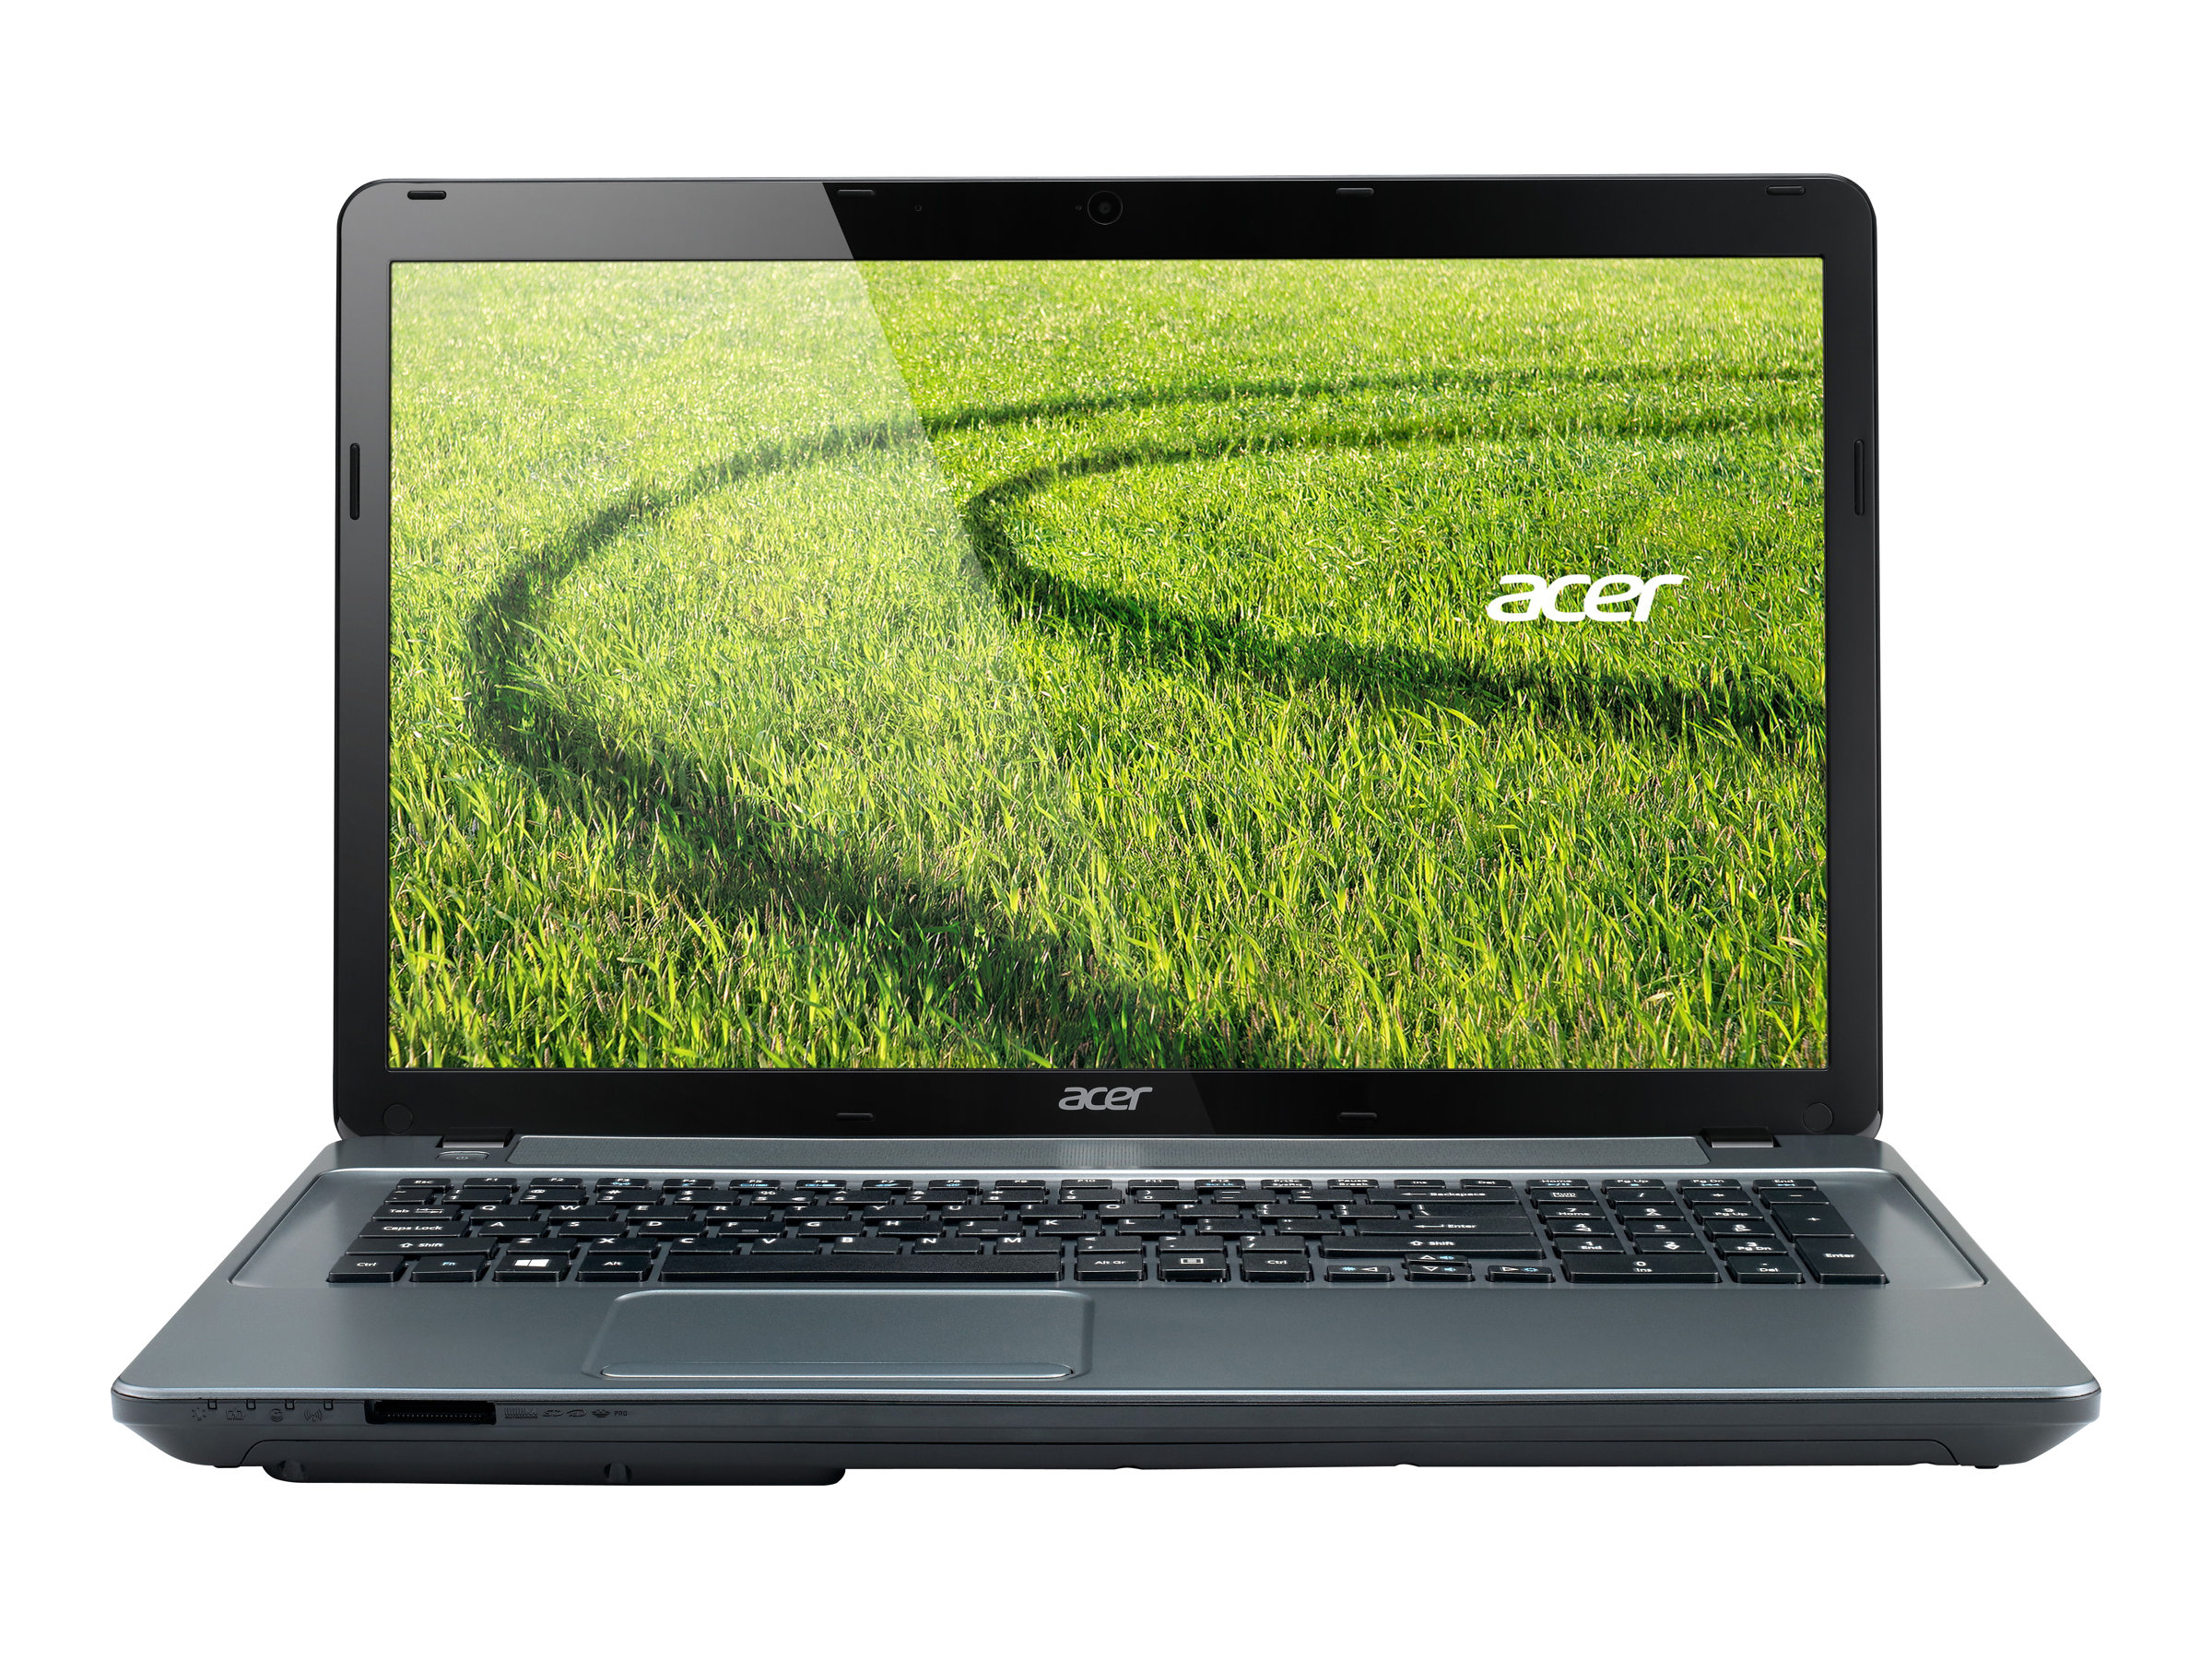 Acer Aspire E1 (731)